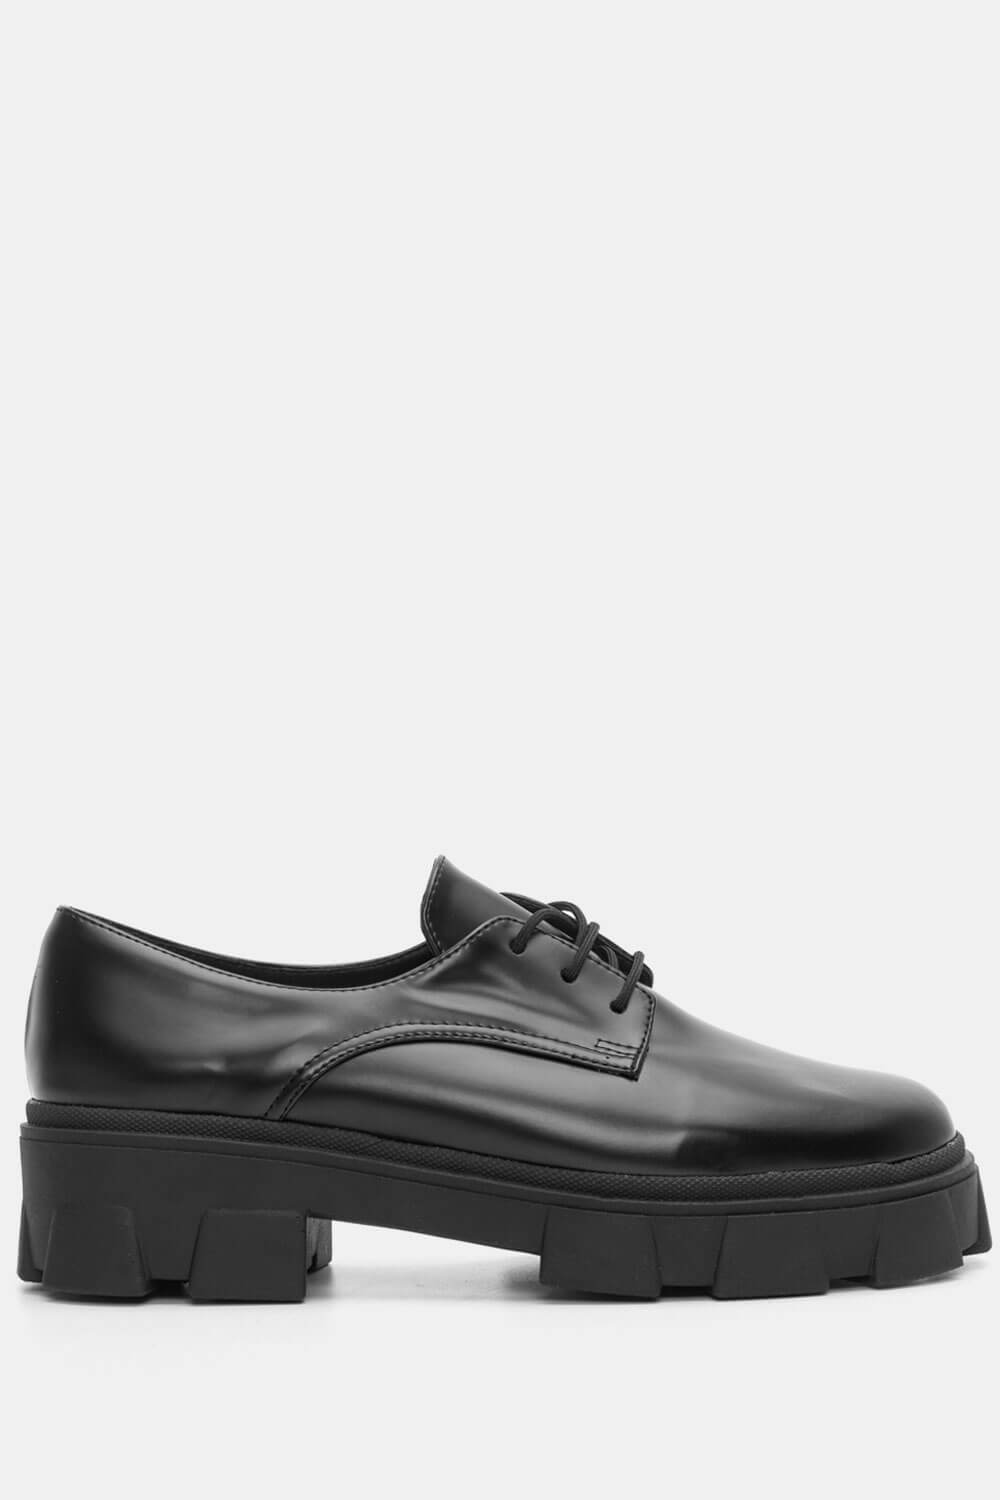 ΠΑΠΟΥΤΣΙΑ > Δετά Παπούτσια LUIGI DESIGN - Δετά Παπούτσια με Τρακτερωτή Σόλα - Μαύρο